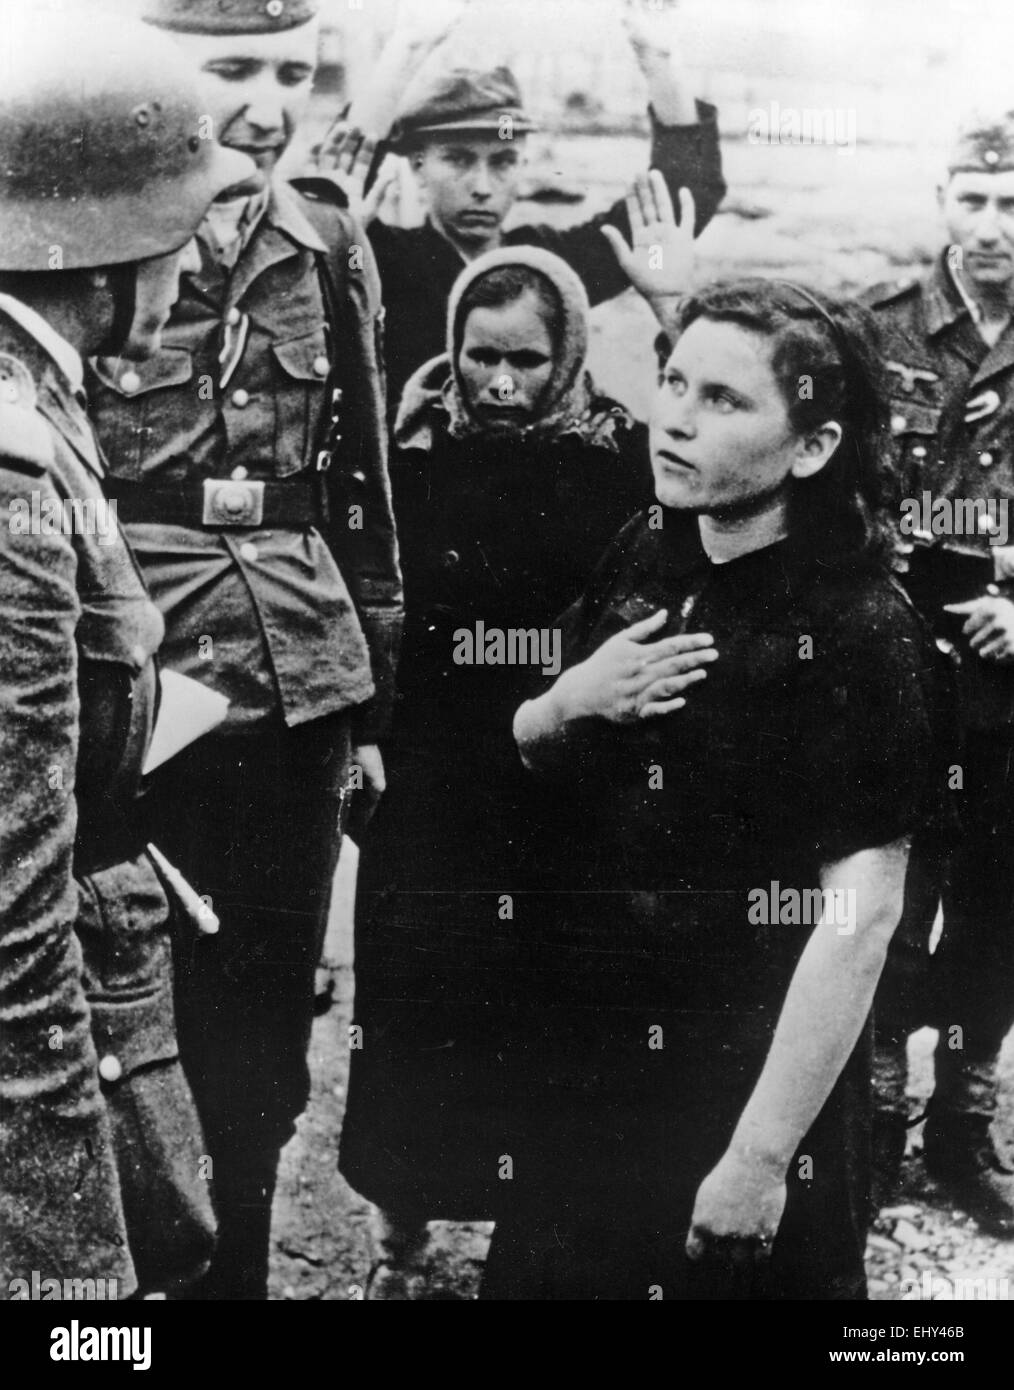 L'opération Barbarossa photo allemand en date du 29 mai 1943. La légende originale : "les soldats allemands ont récemment réussi à rassembler tout un groupe de bandits soviétique près de Novorossijsk. Photo montre une jeune fille russe qui a été pris au cours de la recherche de bandits. Elle a ensuite été en mesure de prouver son innocence" Banque D'Images